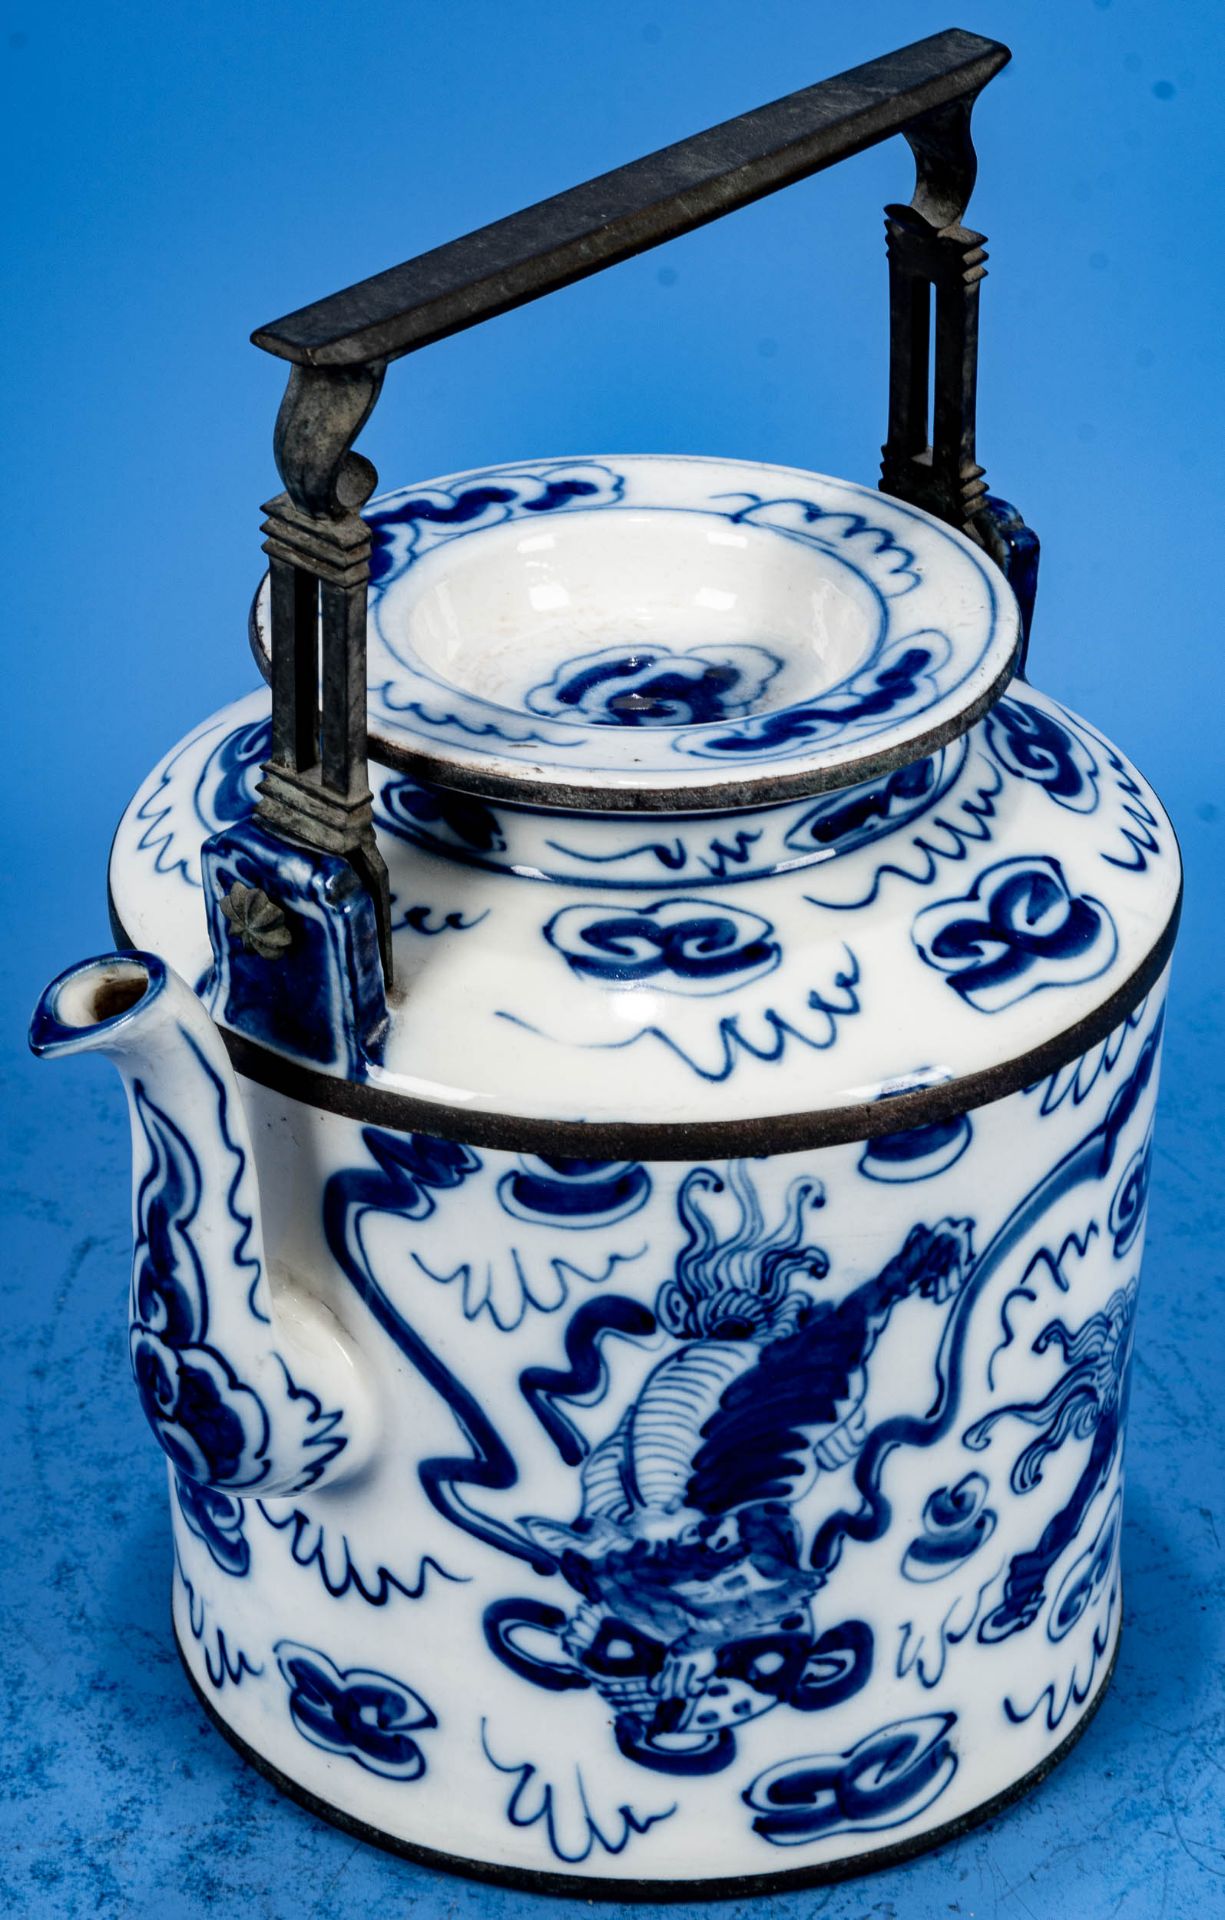 Prächtige Teekanne, ostasiatisches Weißporzellan, u.a. mit Drachendekor von Hand in Blautönen bemal - Bild 4 aus 13